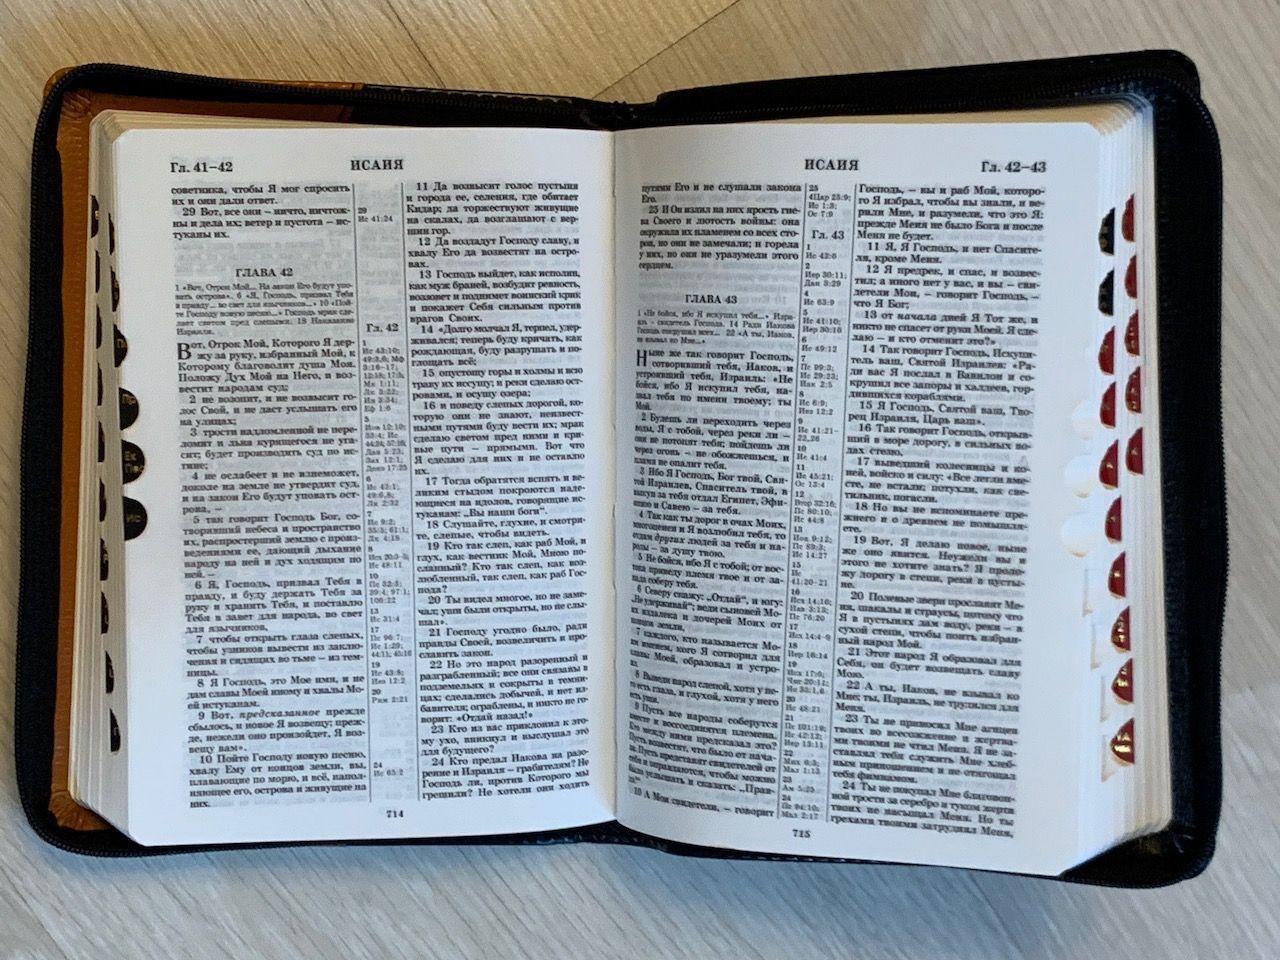 БИБЛИЯ 046DTzti формат, переплет из искусственной кожи на молнии с индексами, надпись золотом "Библия", цвет темно-зеленый/салатовый горизонтальный, средний формат, 132*182 мм, цветные карты, шрифт 12 кегель